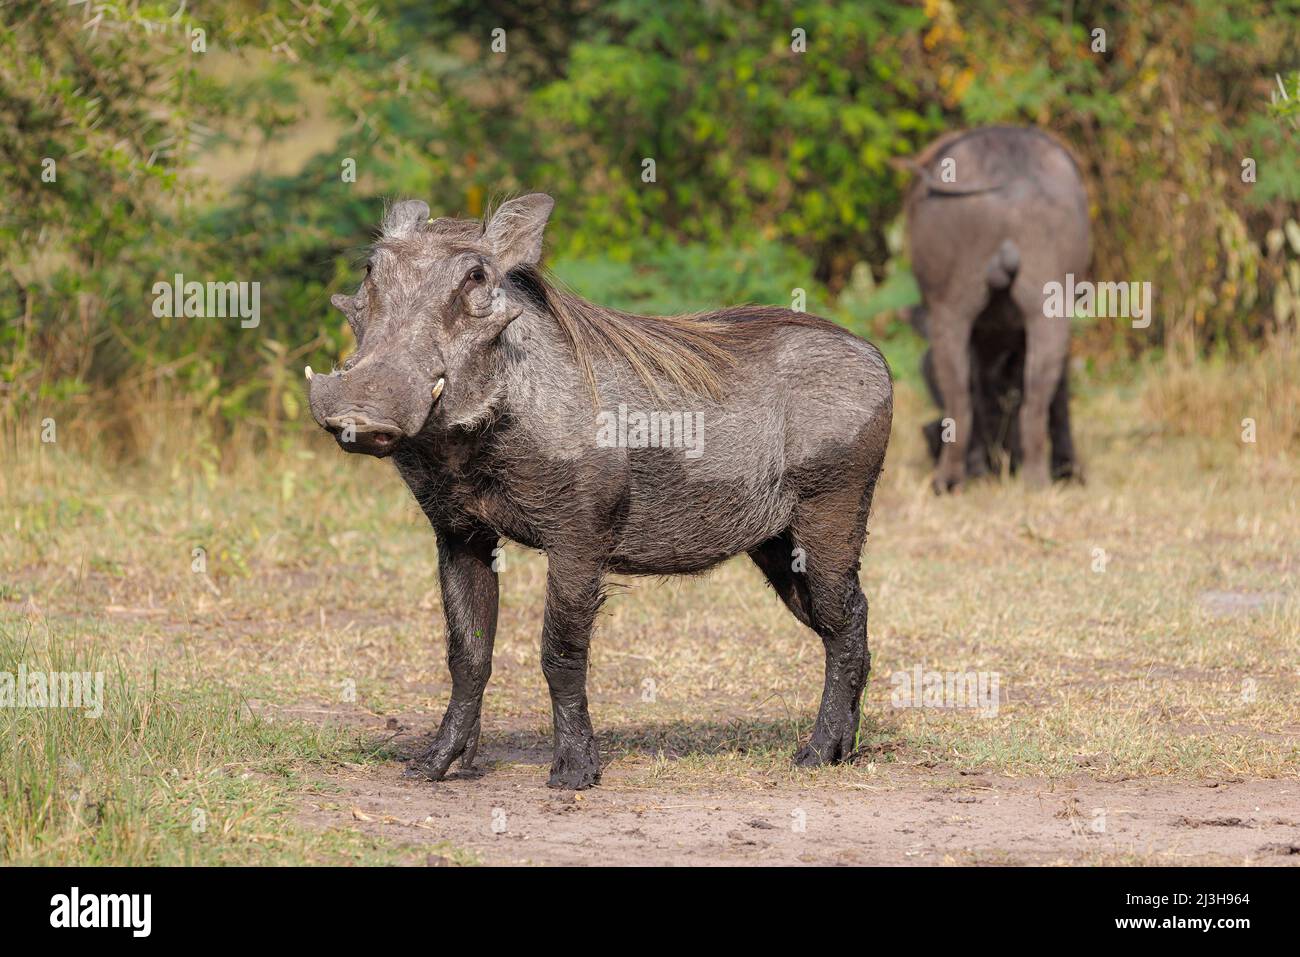 Uganda, Rubirizi District, Katunguru, Queen Elizabeth National Park, Warthog Stockfoto